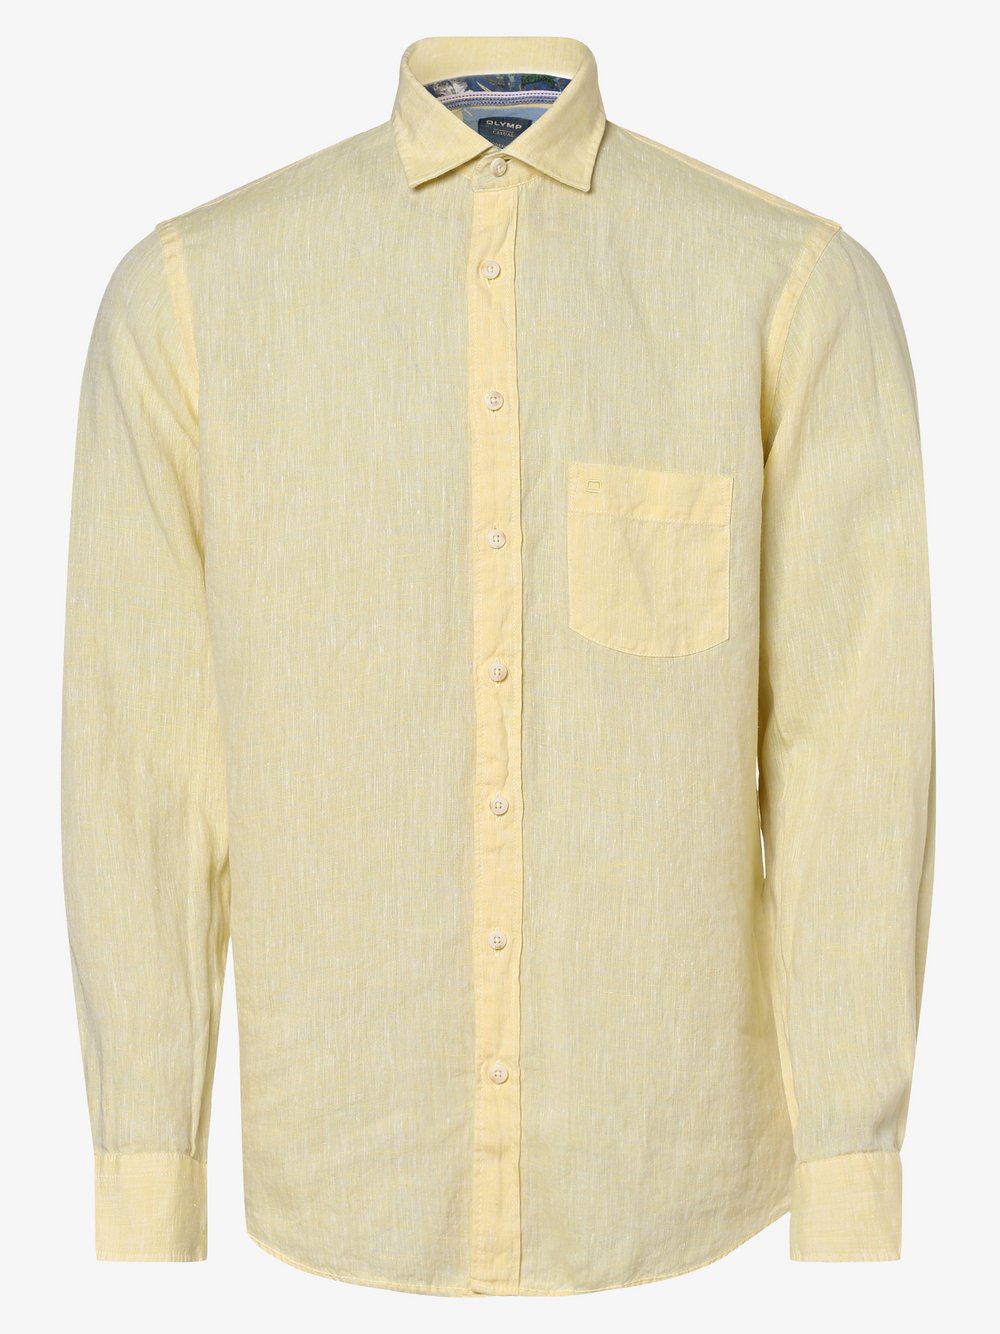 OLYMP Casual modern fit - Męska koszula lniana, żółty